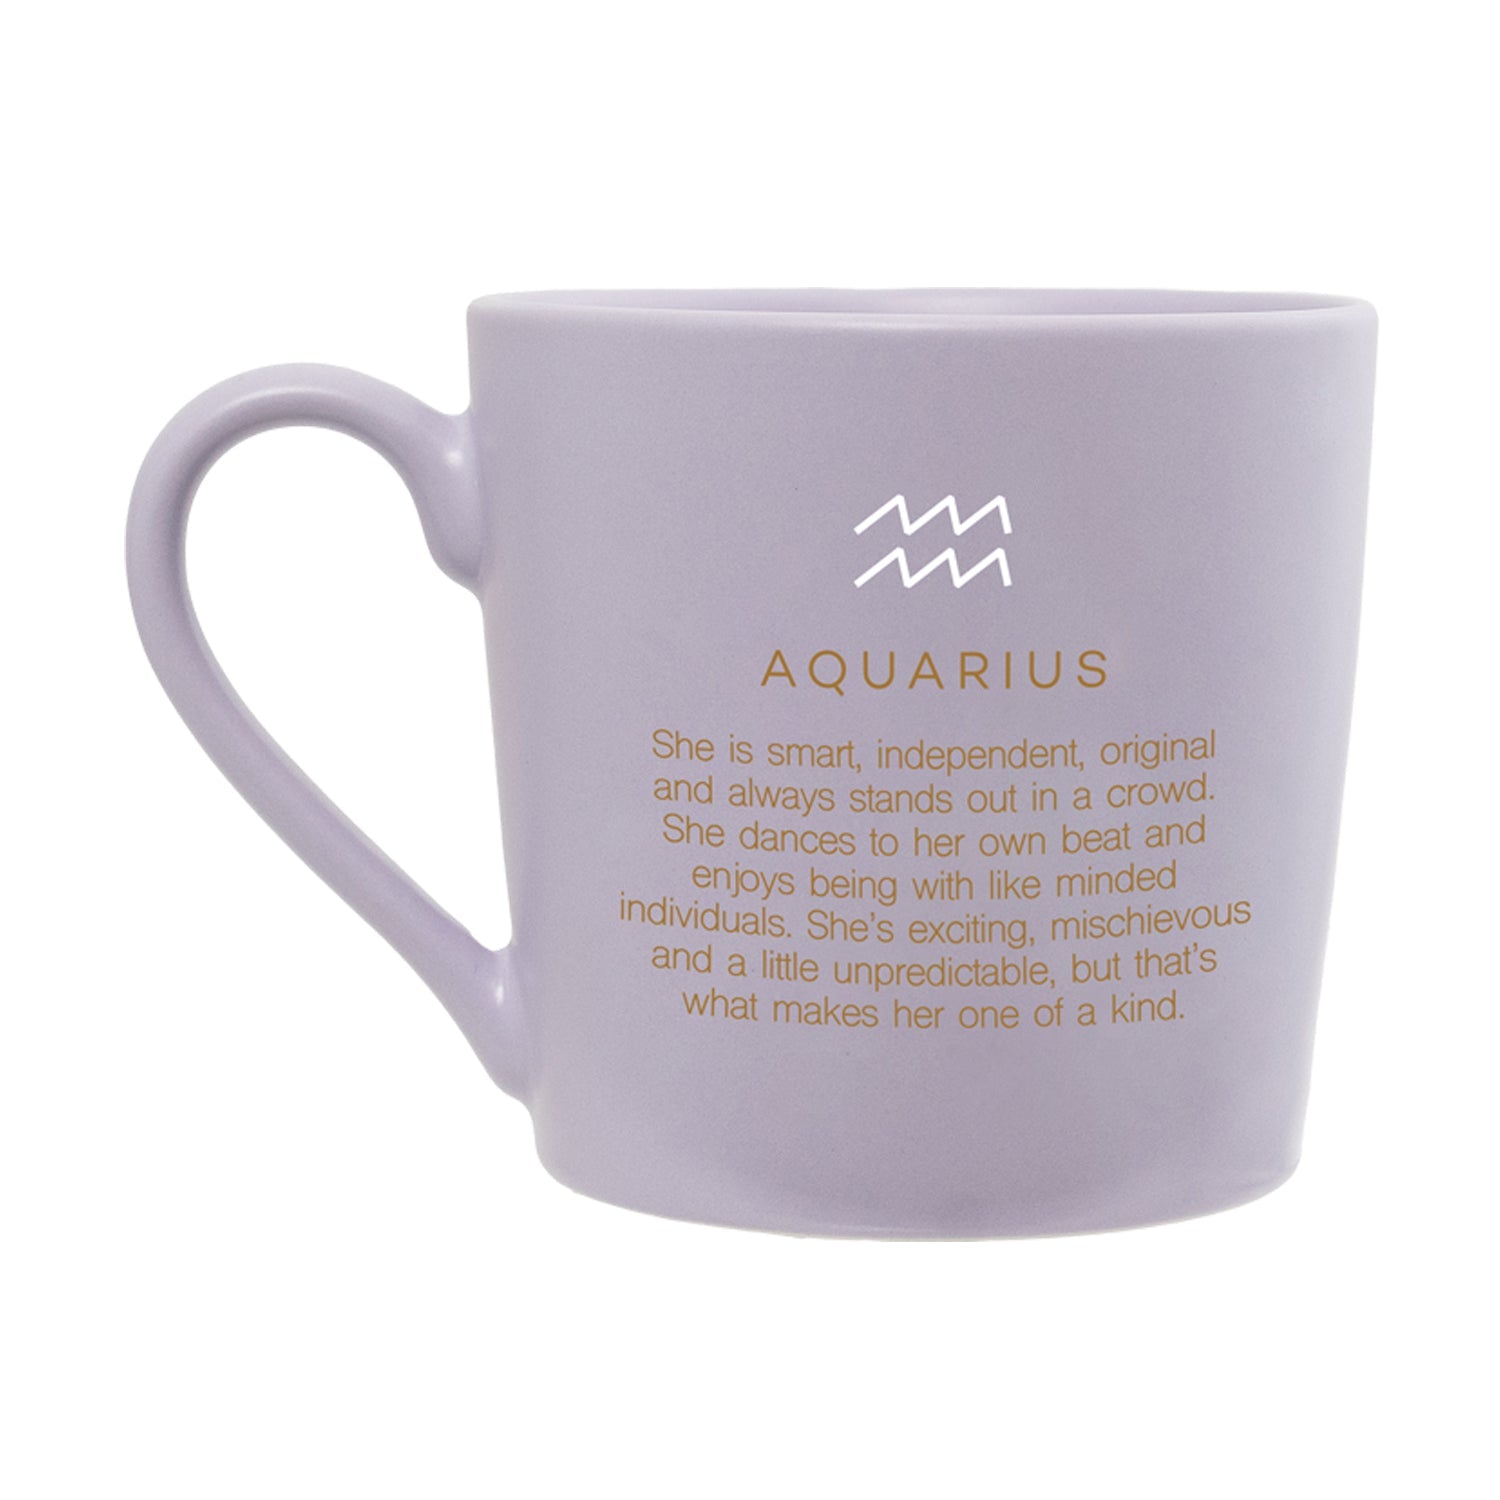 Splosh - Mystique Mug - Aquarius